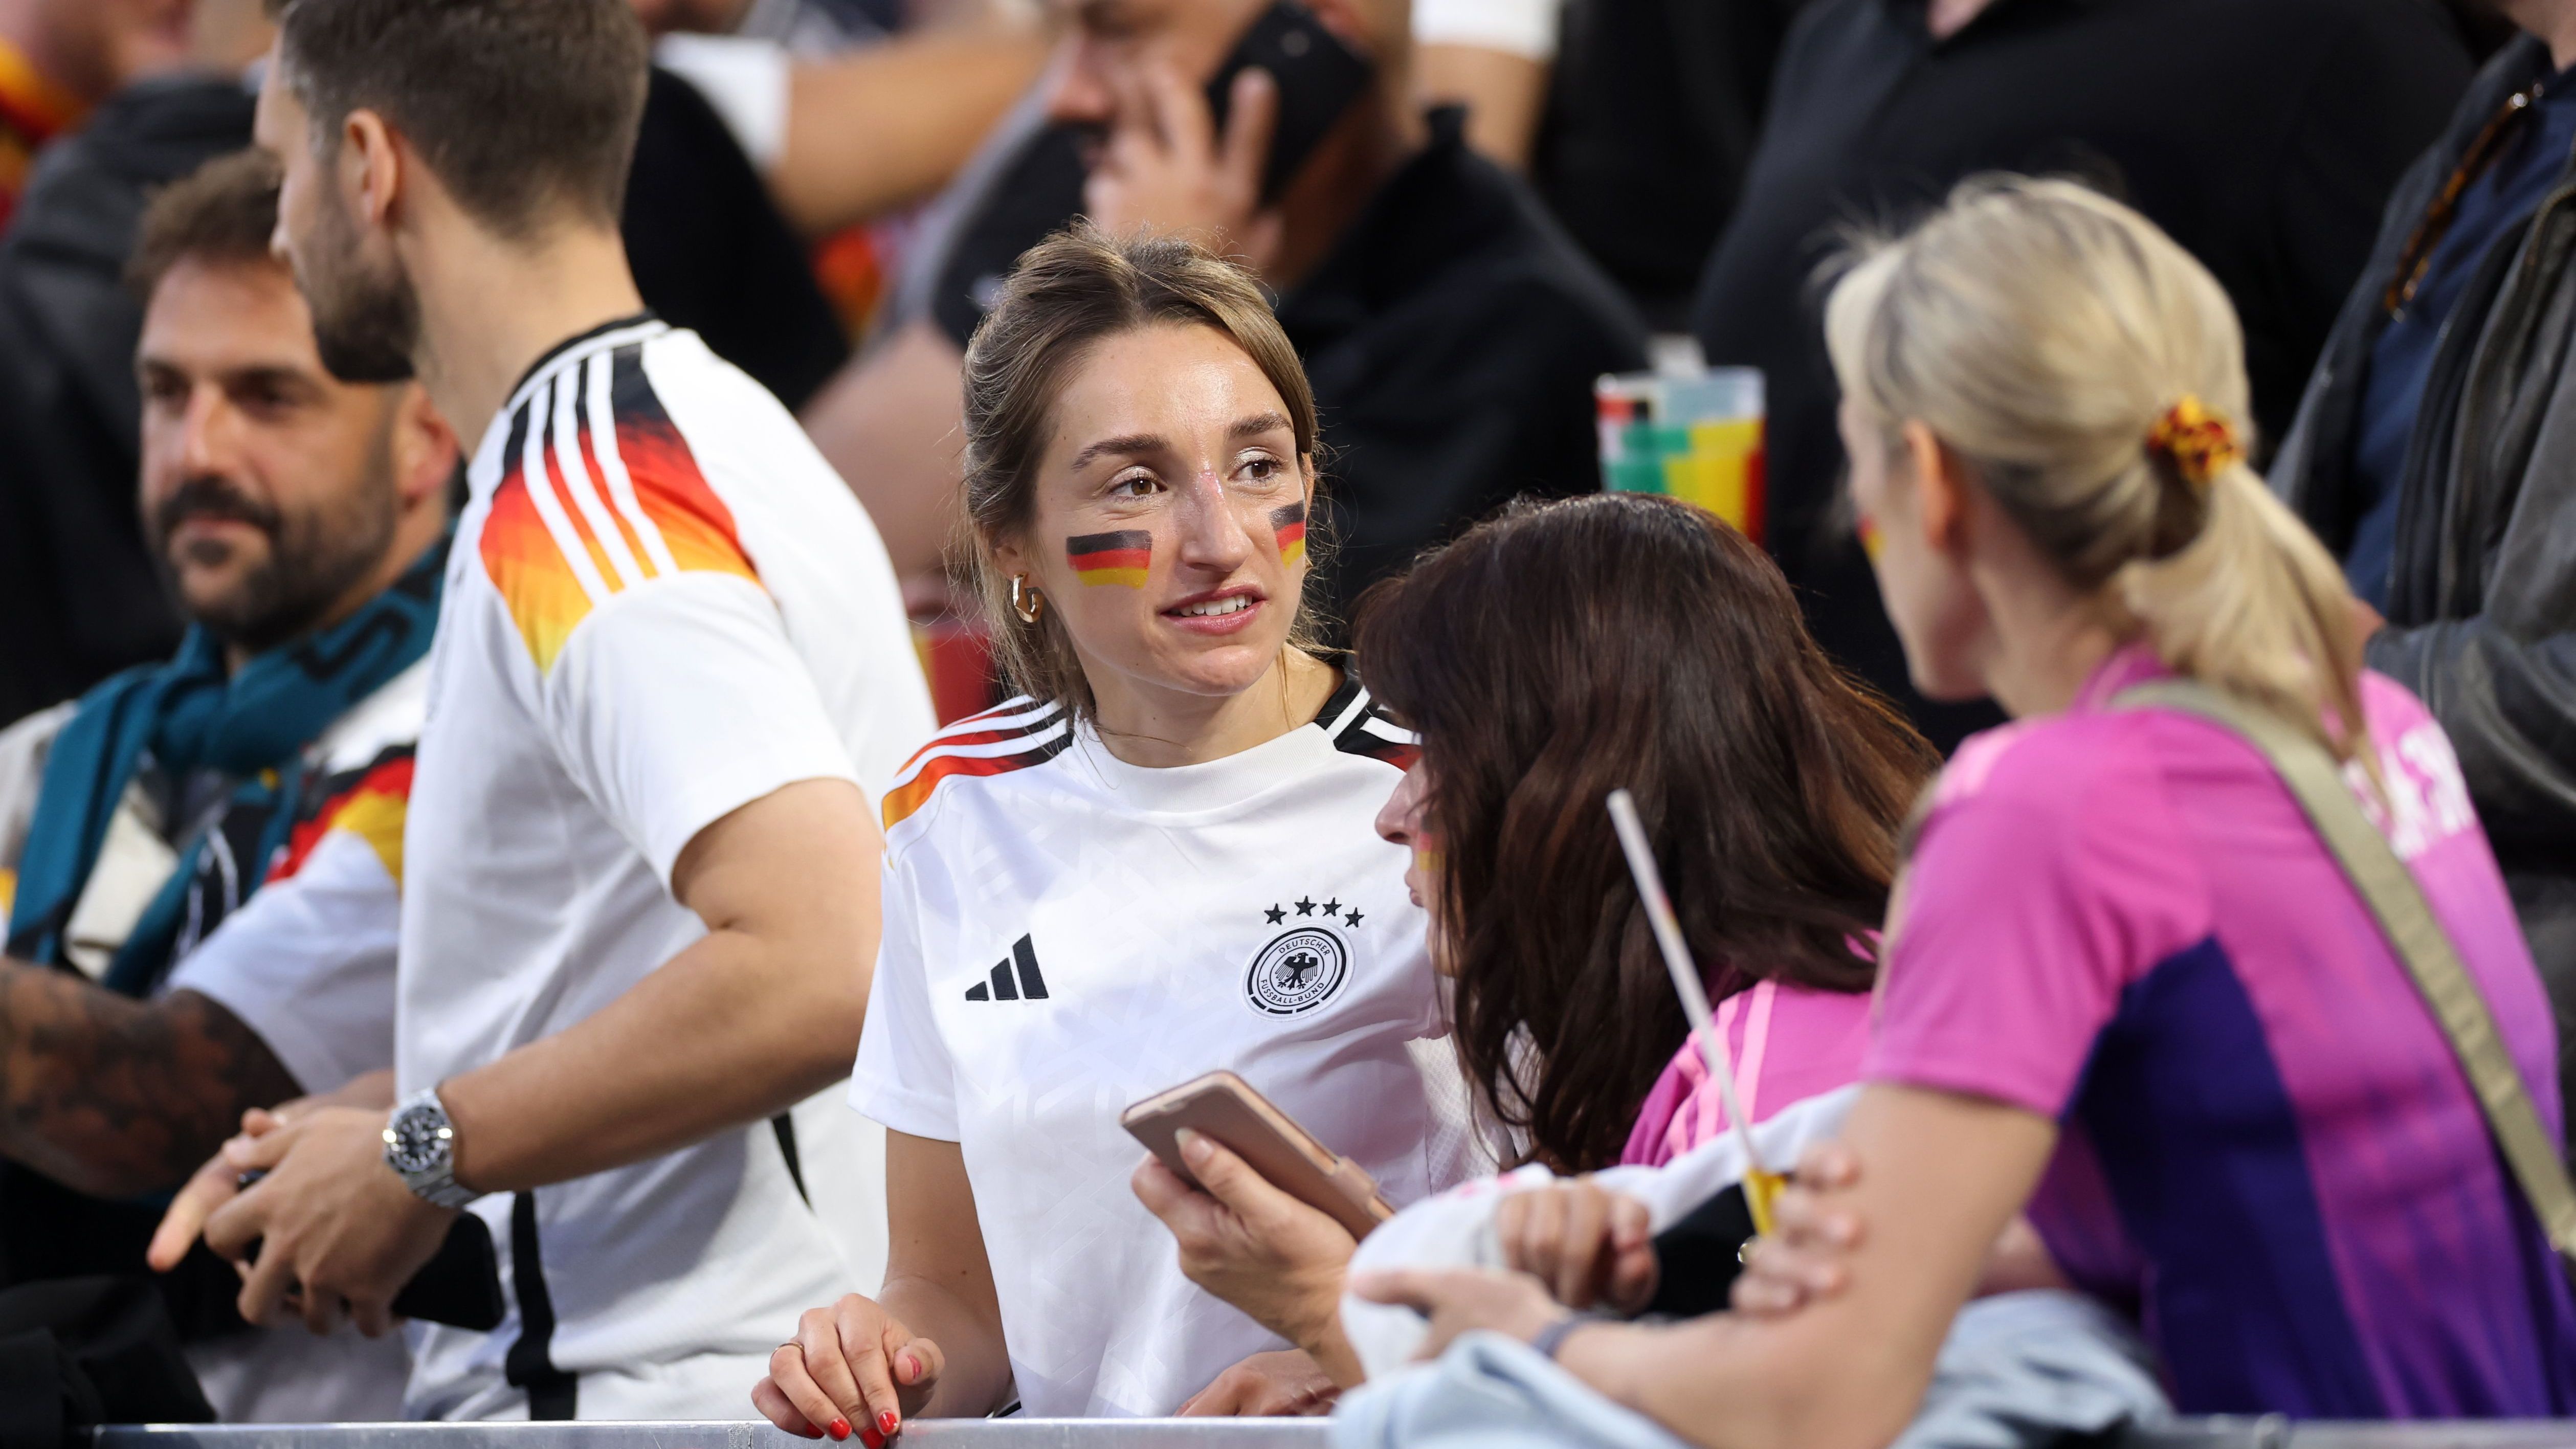 <strong>Nagelsmann-Partnerin im Stadion mit dabei</strong><br>Lena Wurzenberger, Partnerin von Bundestrainer Julian Nagelsmann, war gegen Schottland natürlich auch auf der Tribüne, um den deutschen EM-Auftakt live mitzuverfolgen.&nbsp;